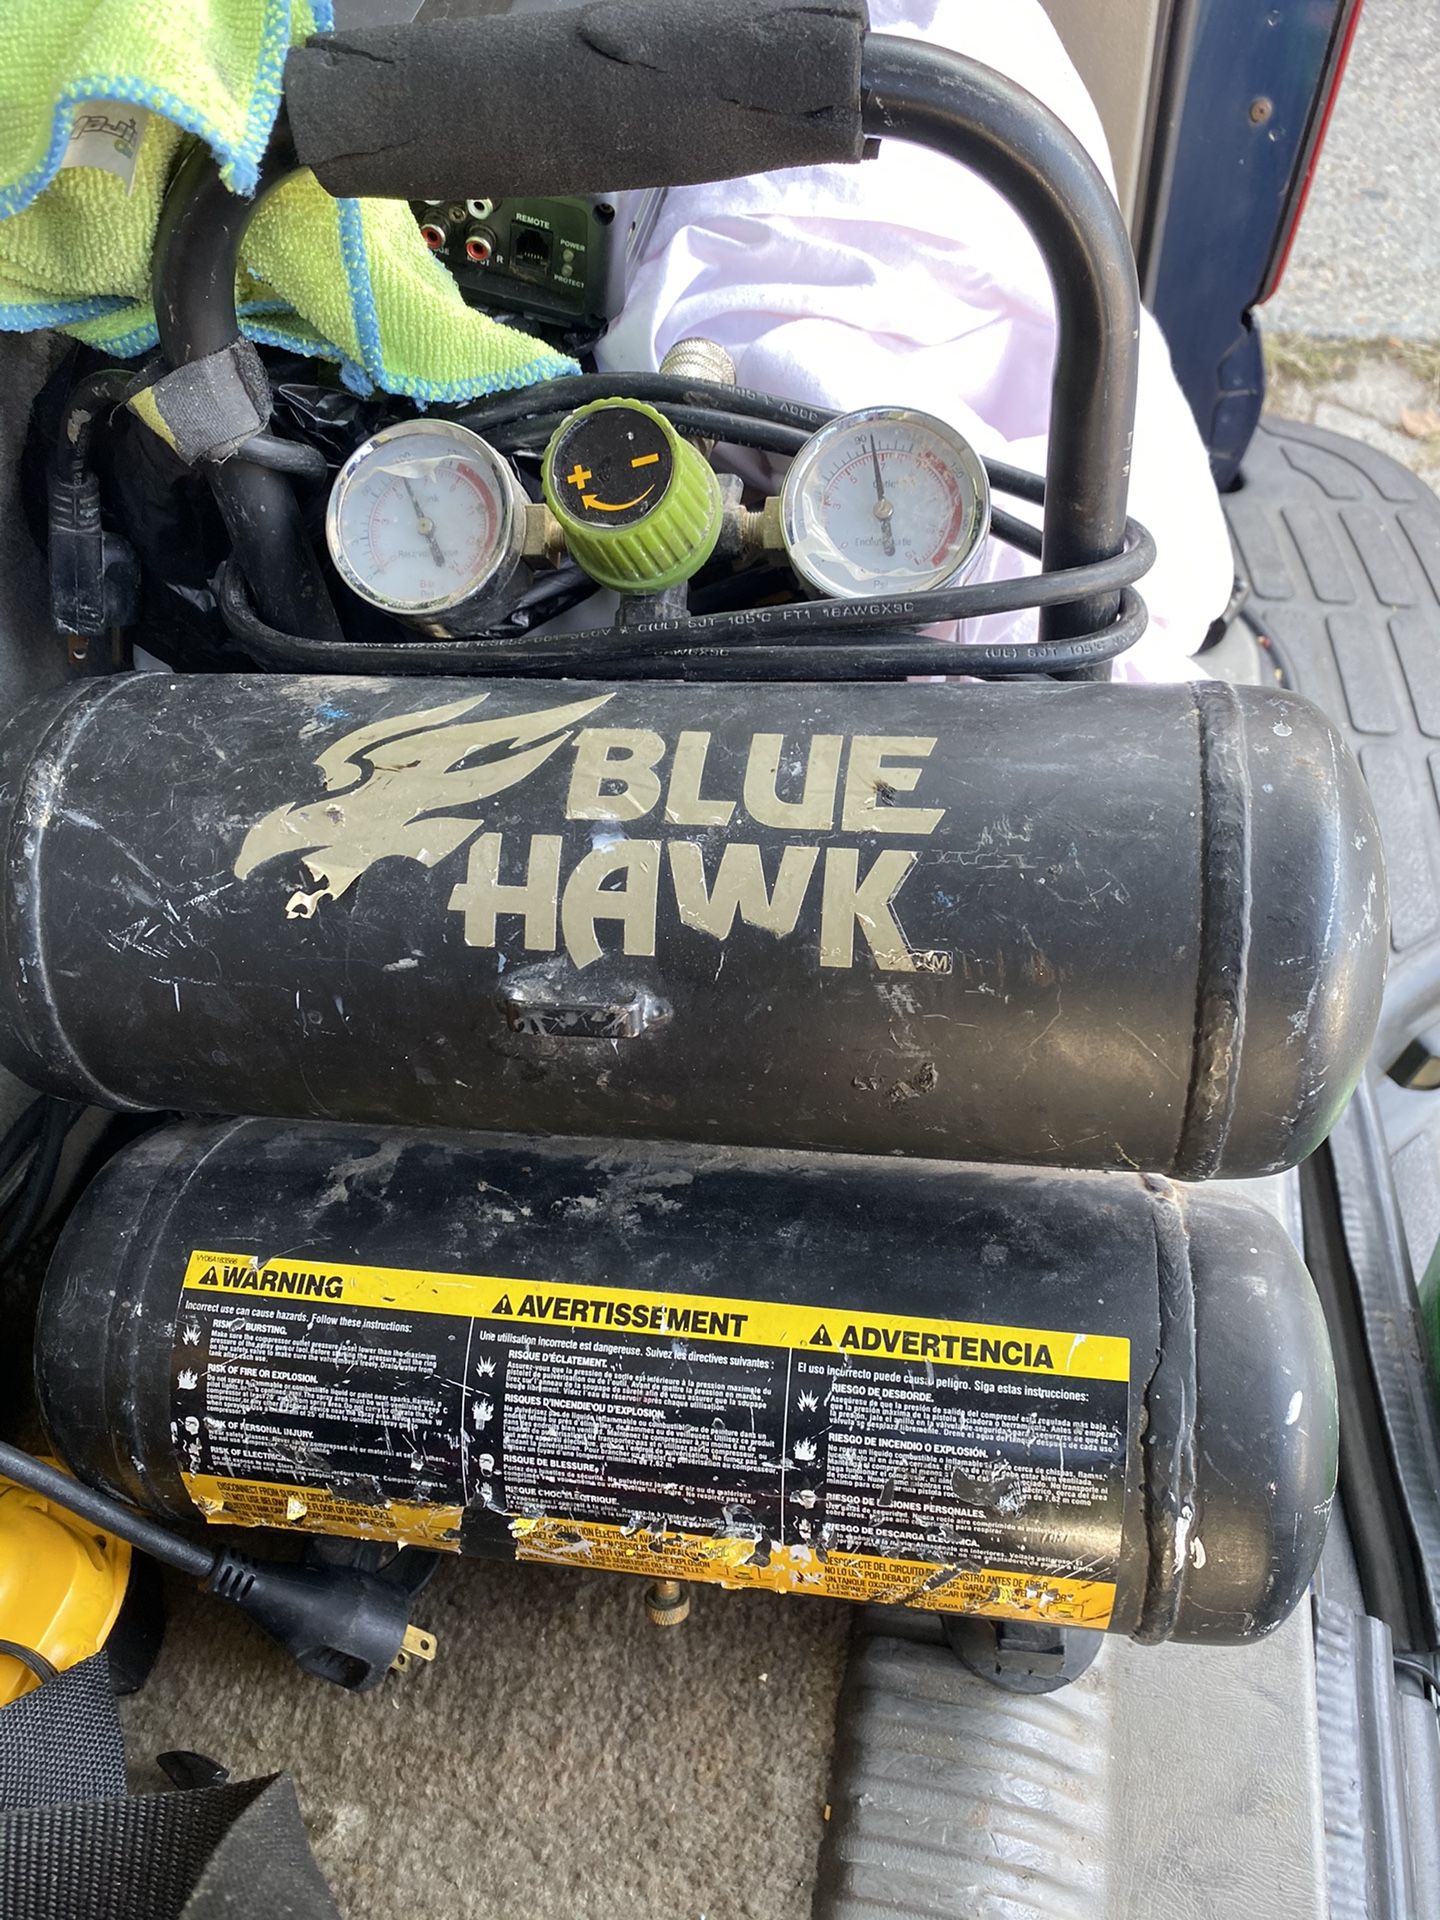 Blue hawk compressor